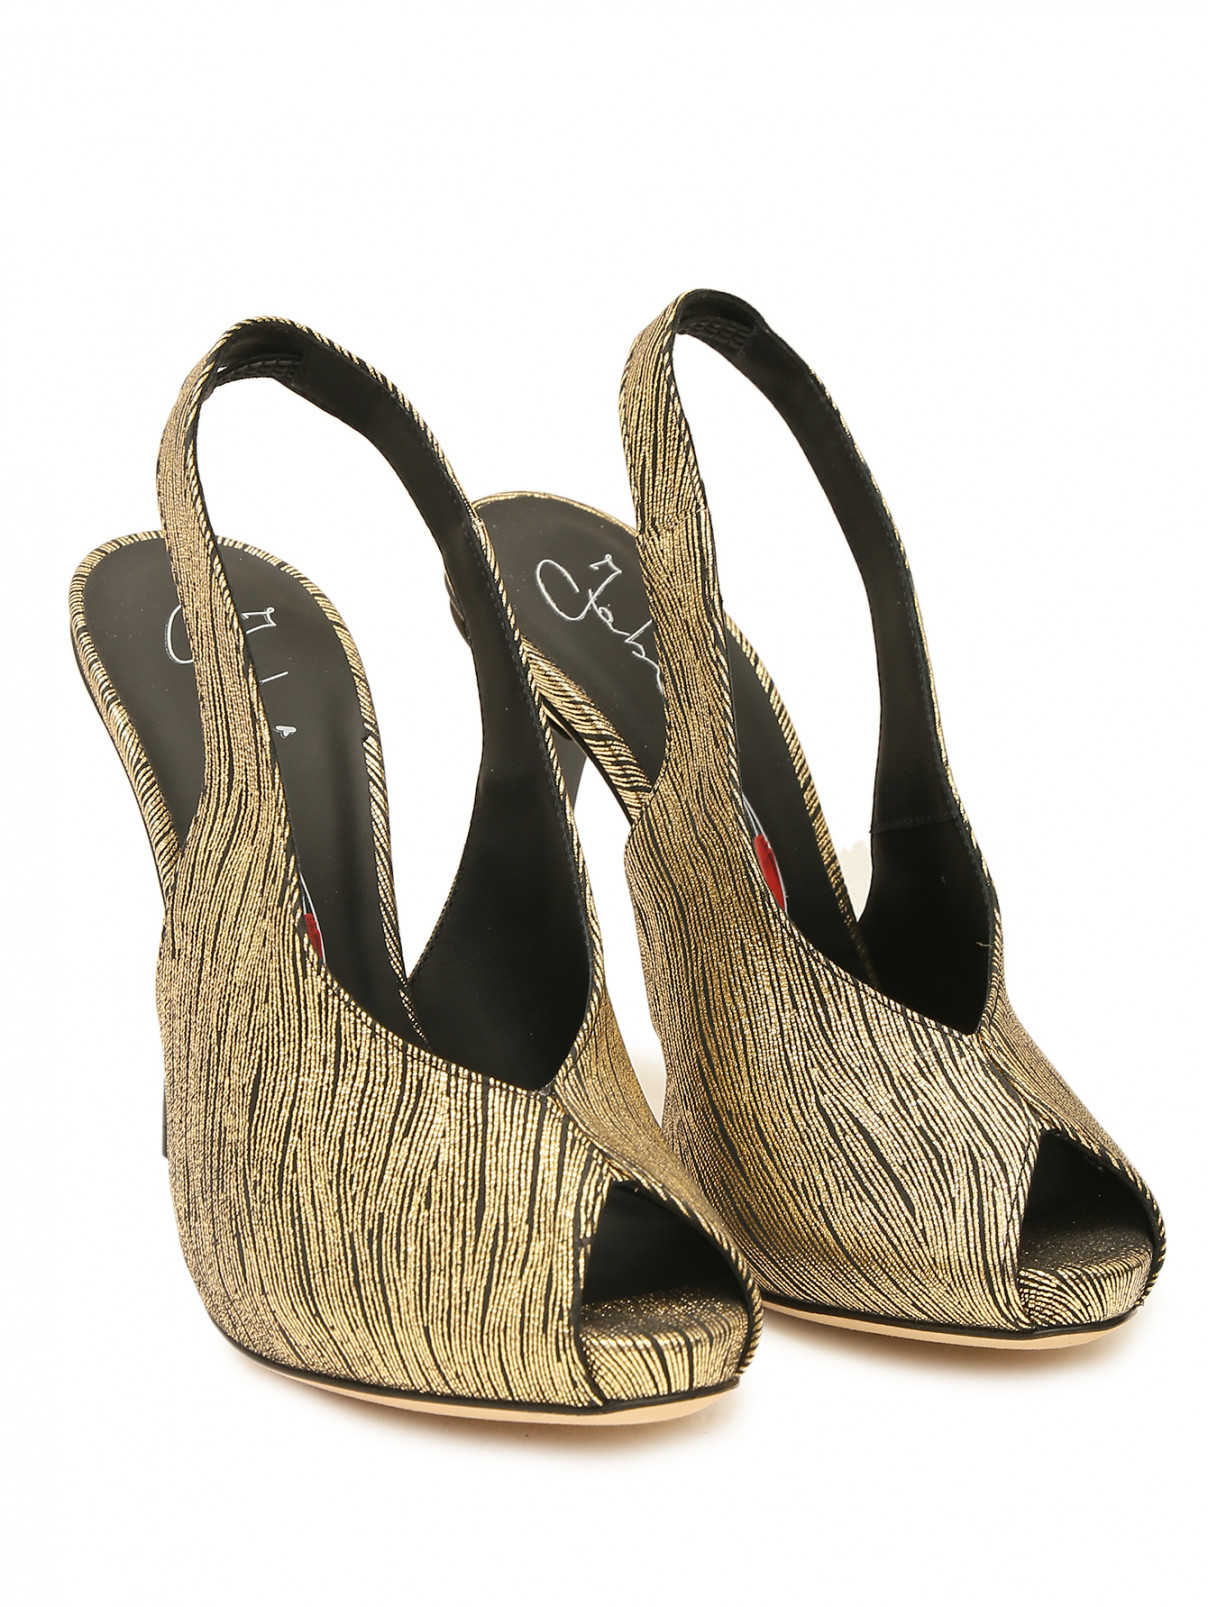 Кожаные туфли с золотой нитью Fabi  –  Общий вид  – Цвет:  Золотой